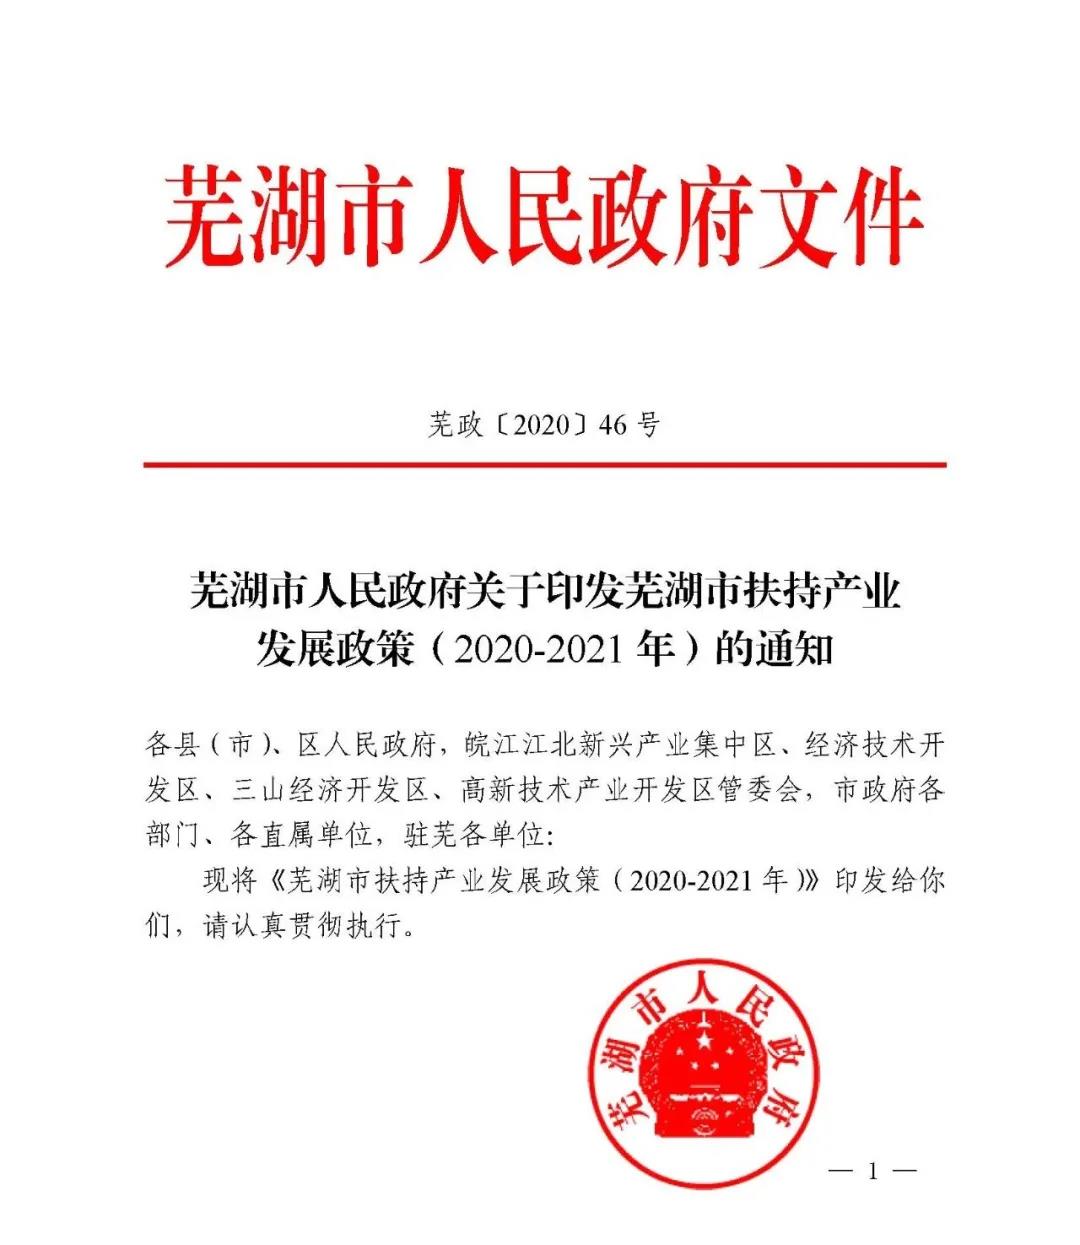 【芜湖市人民政府】芜湖市扶持产业发展政策（2020-2021年）印发